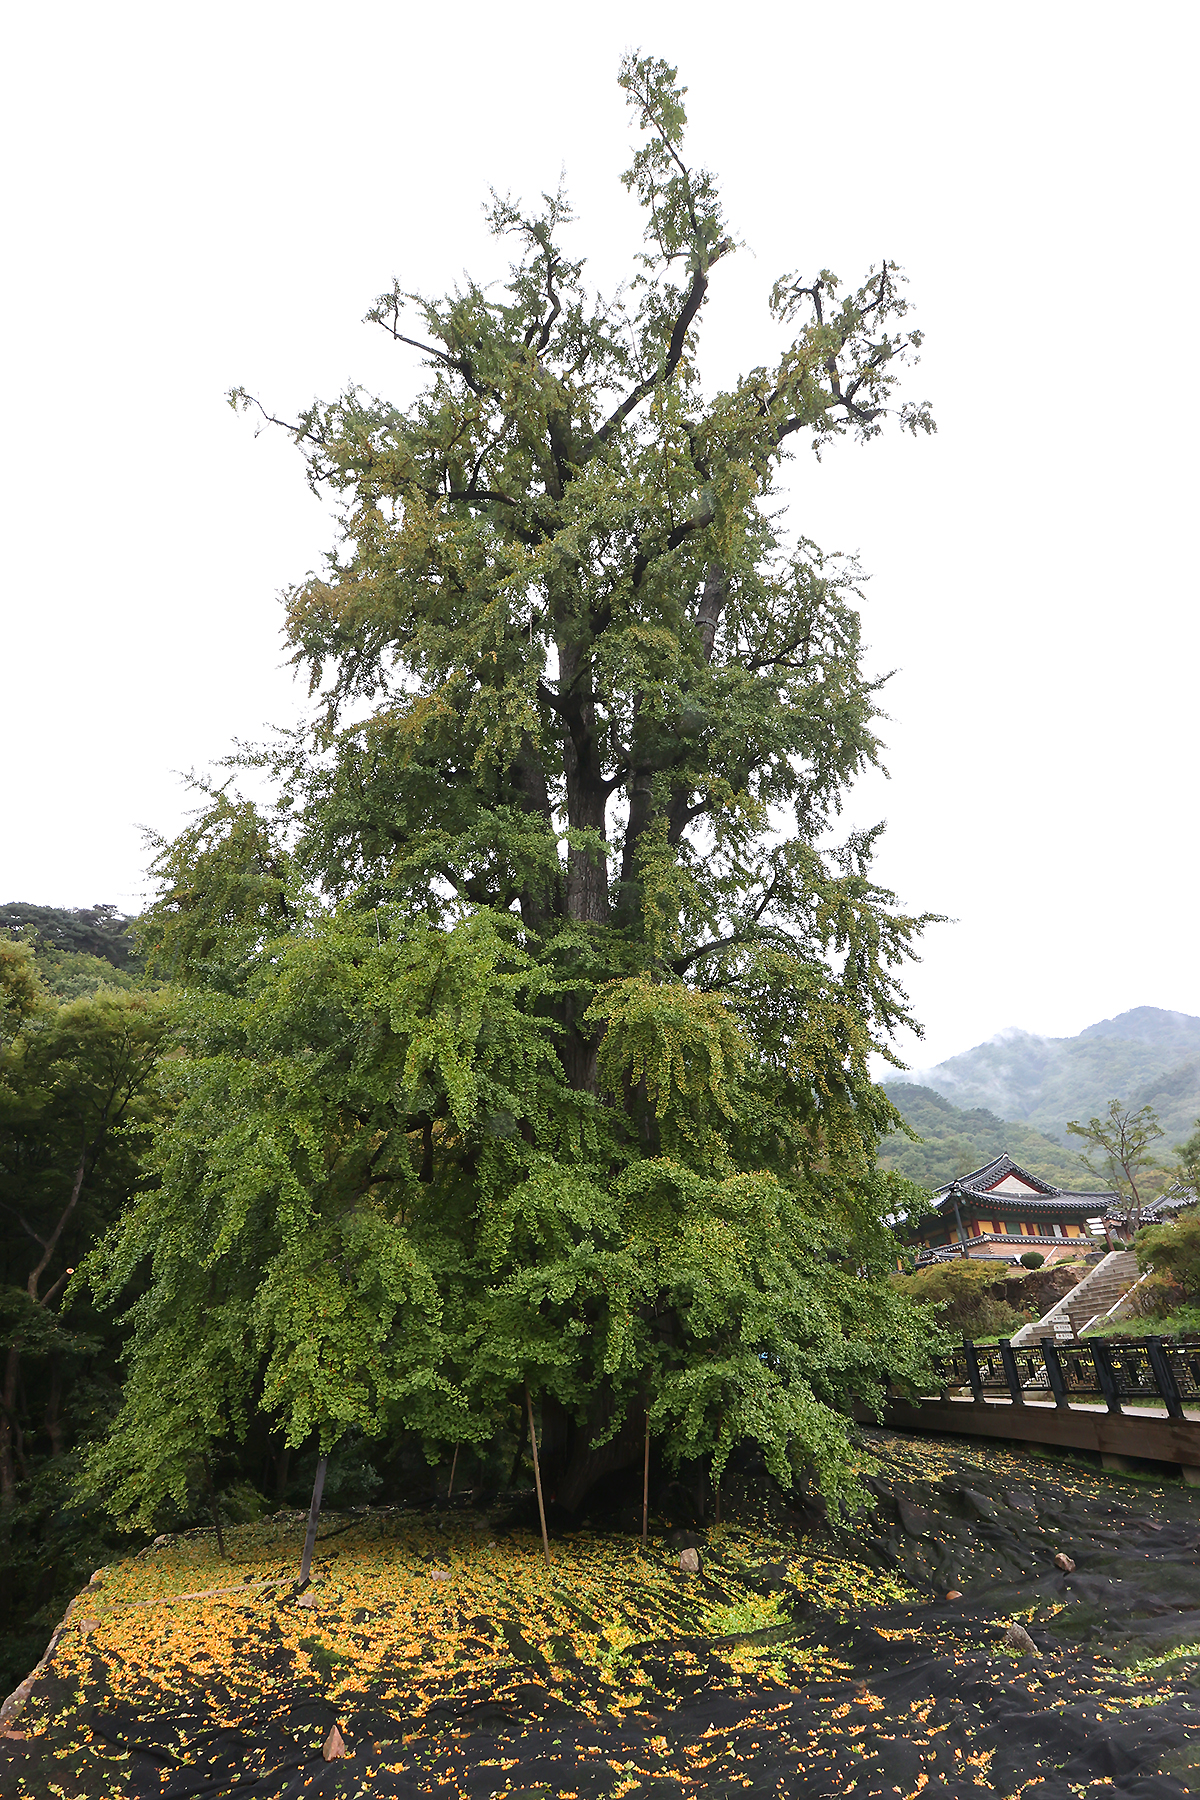 용문사 경내에 수령이 1,100년이 넘는 은행나무가 서 있는데, 이는 마의태자가 심었다고 전해지며 현재 천연기념물 제30호로 지정되어 있다.